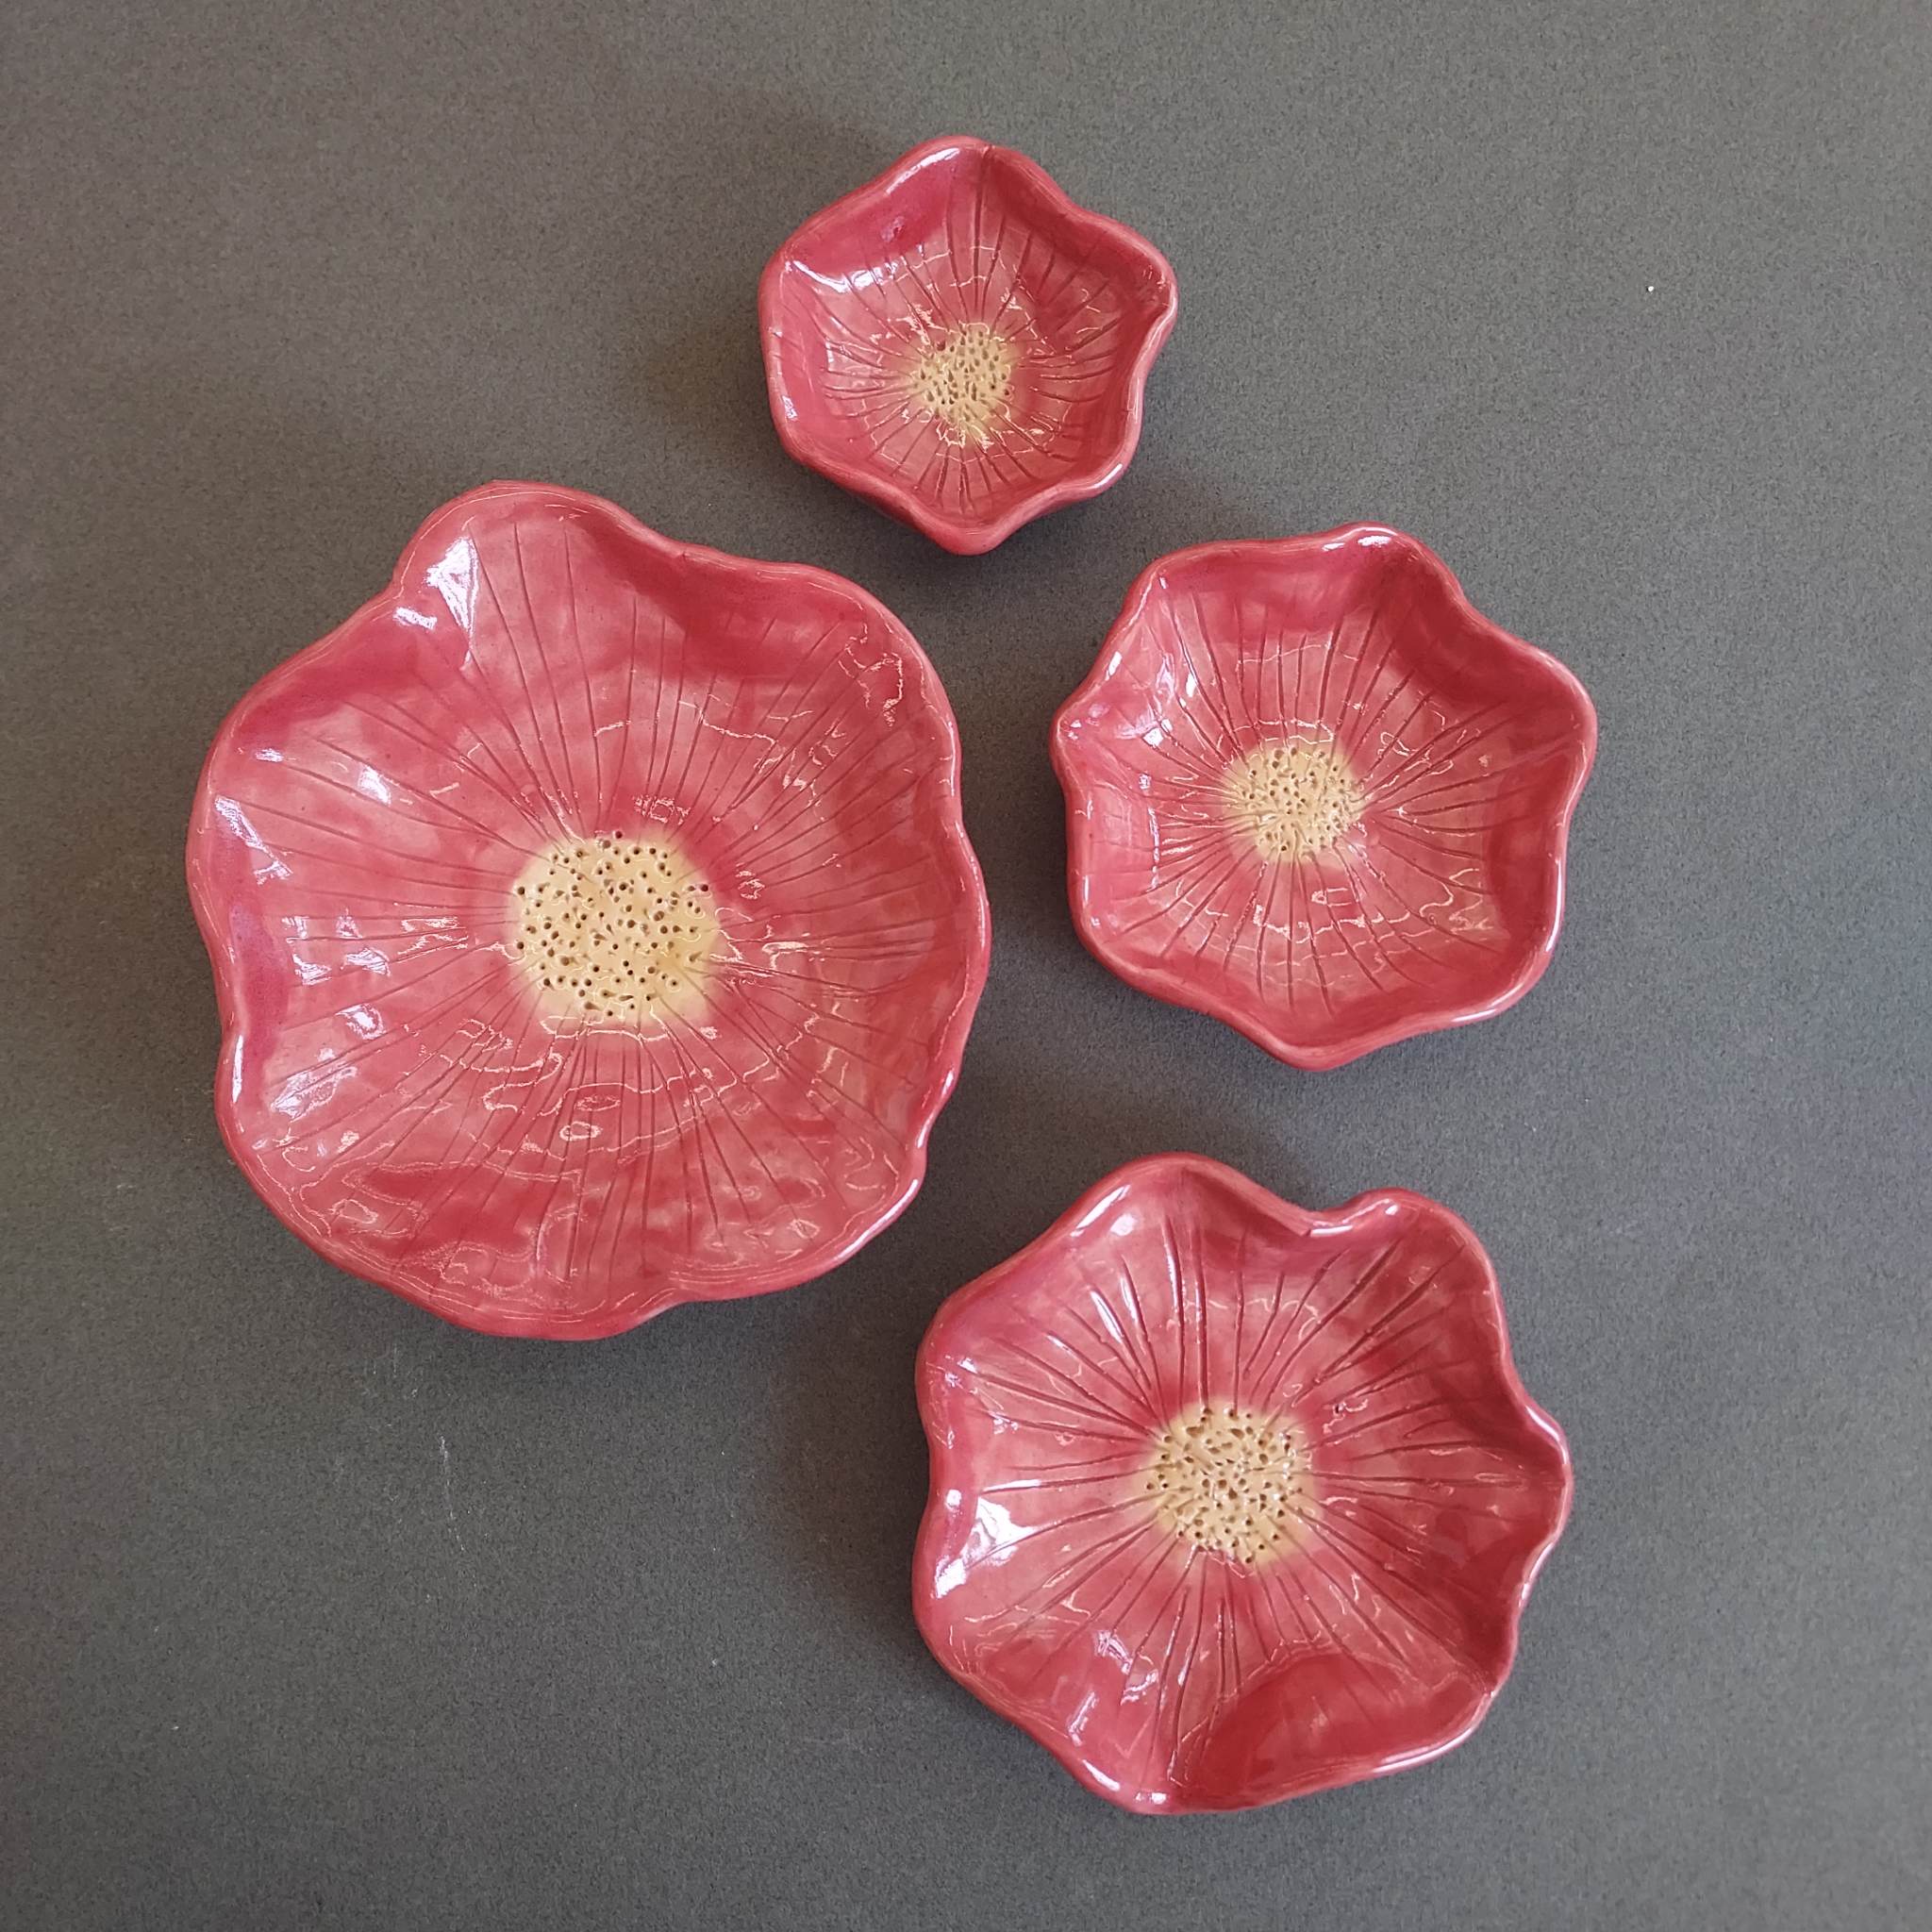 Ceramics Class: Intro to Ceramics with Sophia Lappe Image #2